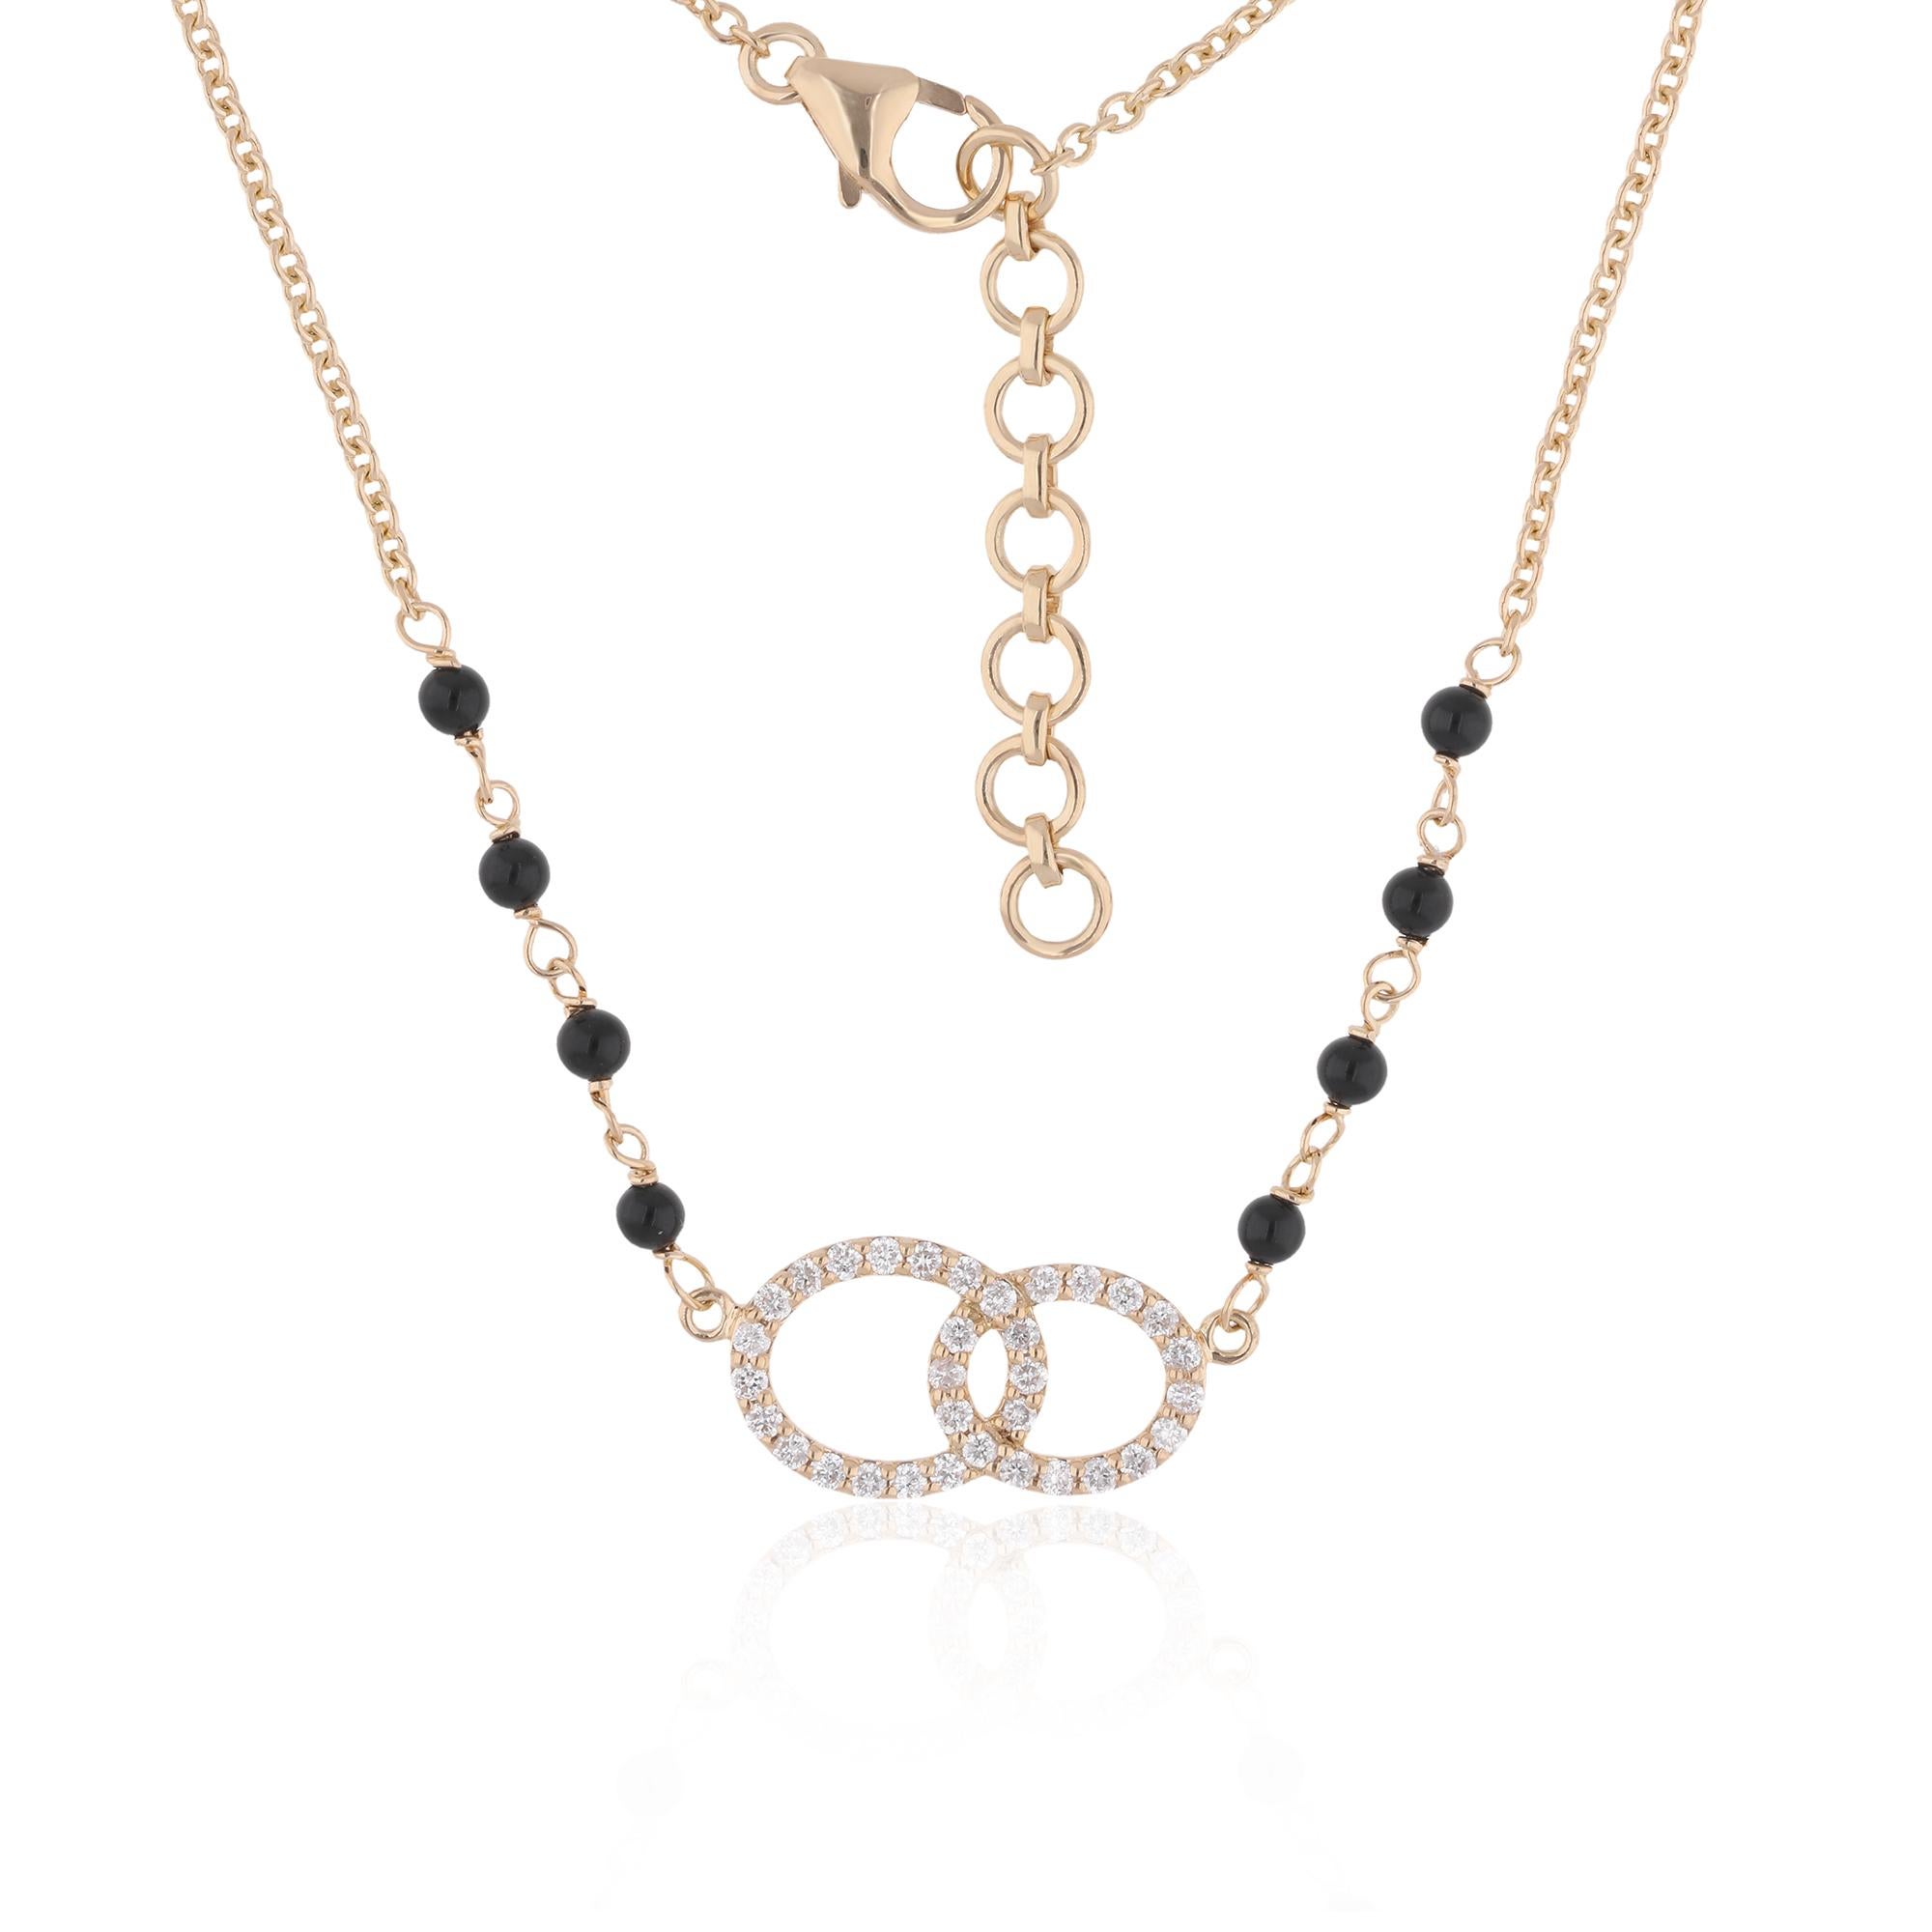 Das Herzstück der Halskette ist eine Sammlung von lebhaften Edelsteinperlen, von denen jede für ihre einzigartige Farbe und ihren Charakter sorgfältig ausgewählt wurde. Von den satten Blautönen des Lapislazuli bis hin zu den ruhigen Grüntönen der